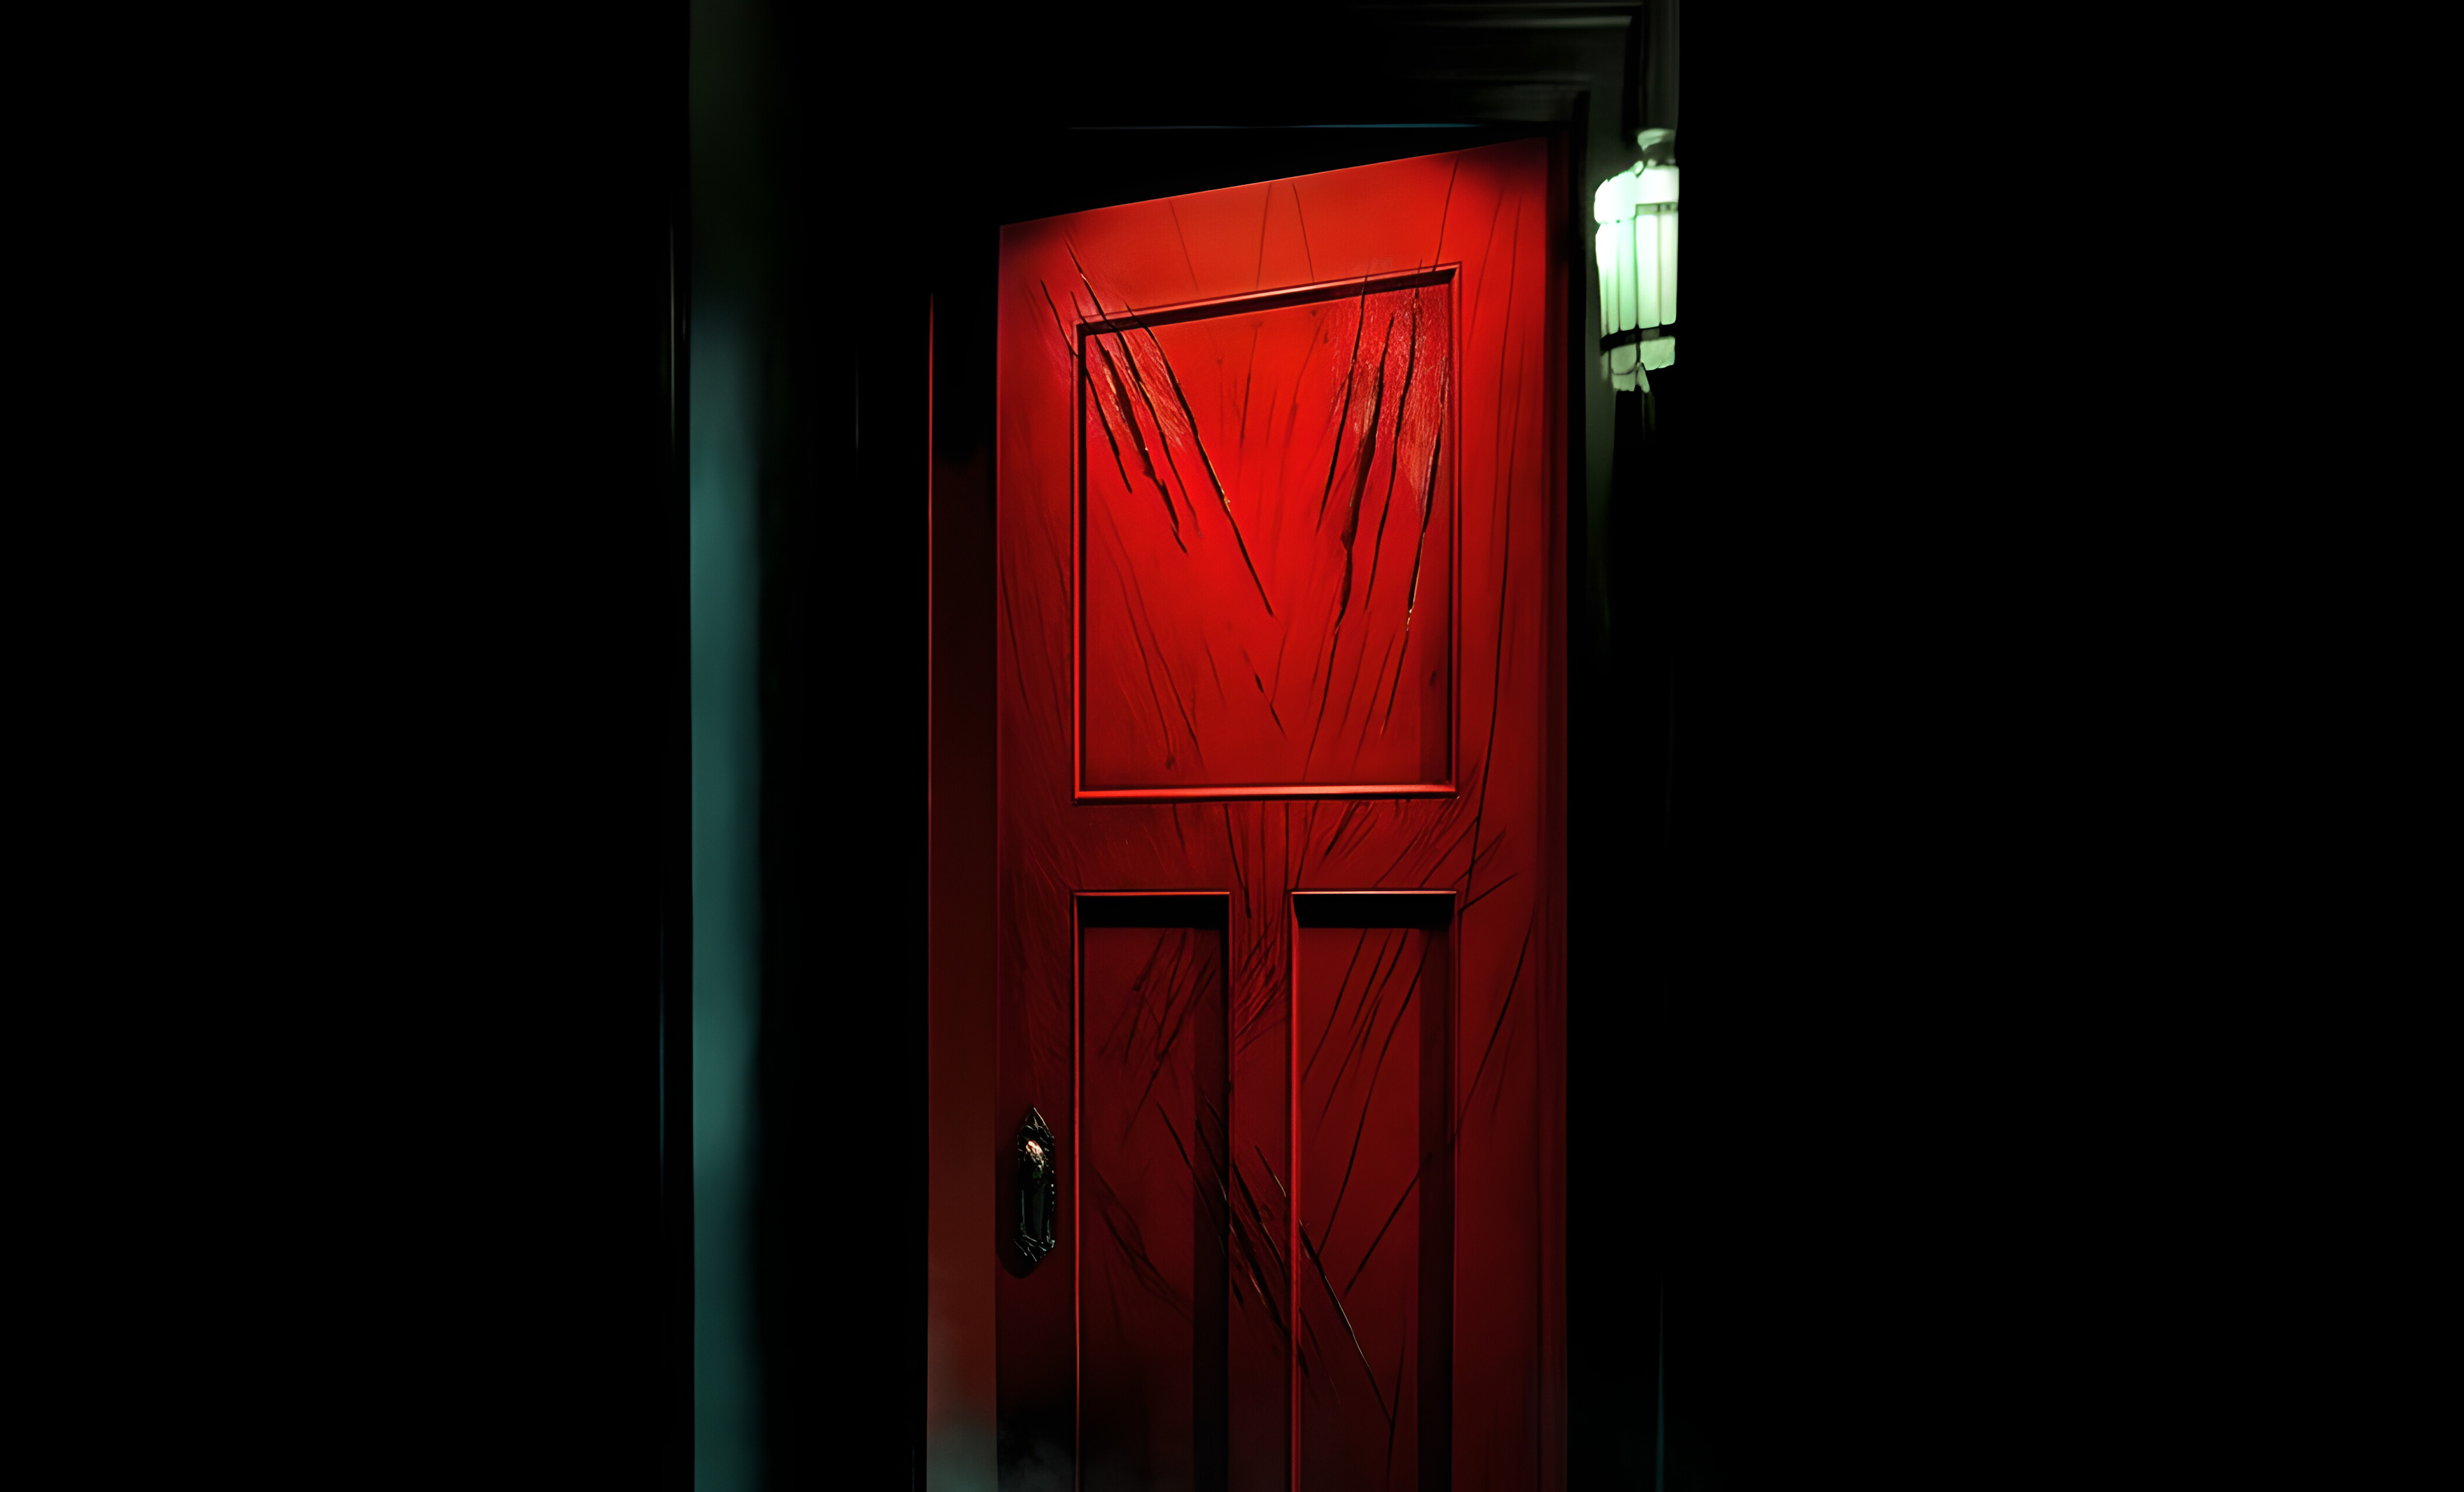 «Астрал 5: Красная дверь» – долгожданное завершение популярной серии хорроров